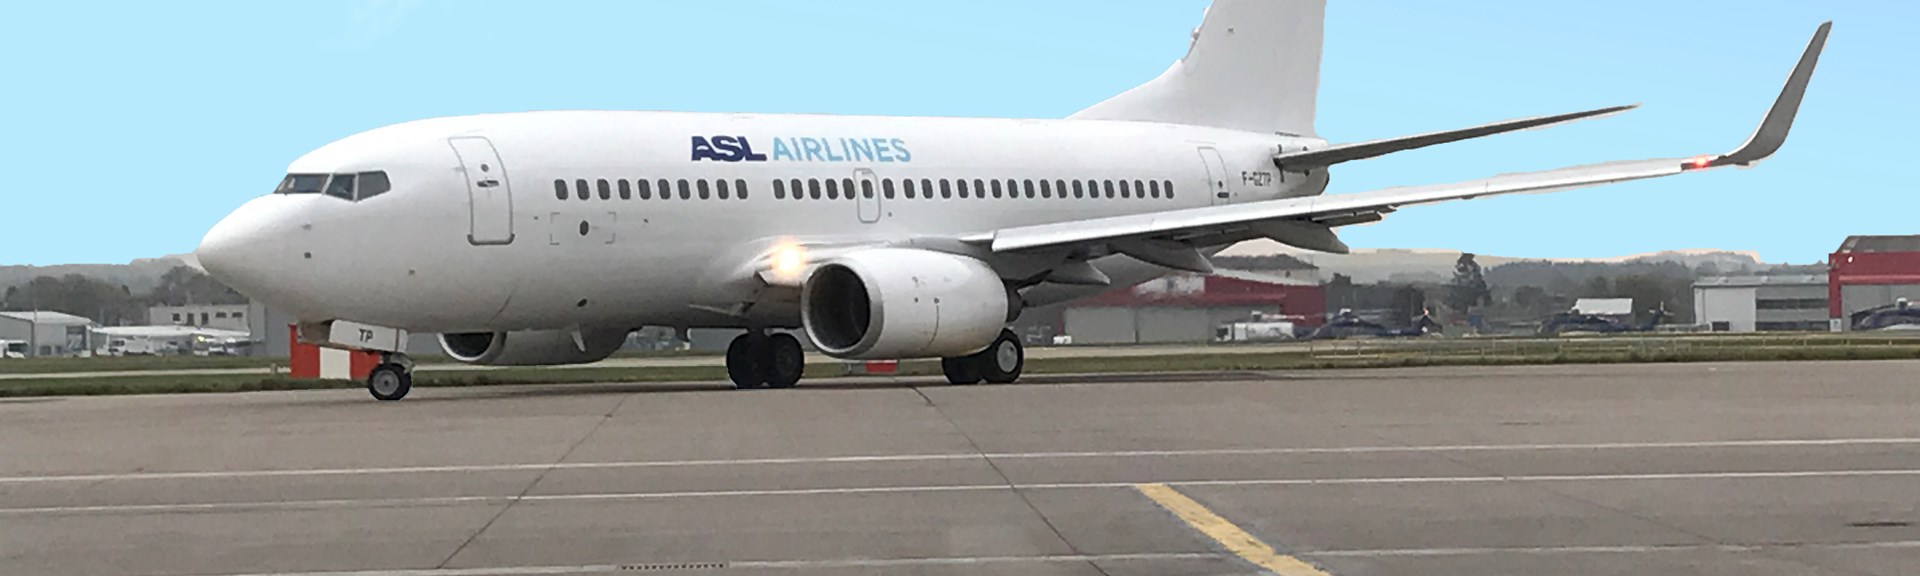 Fokker Services Develops LPV Solution with ASL Airlines France